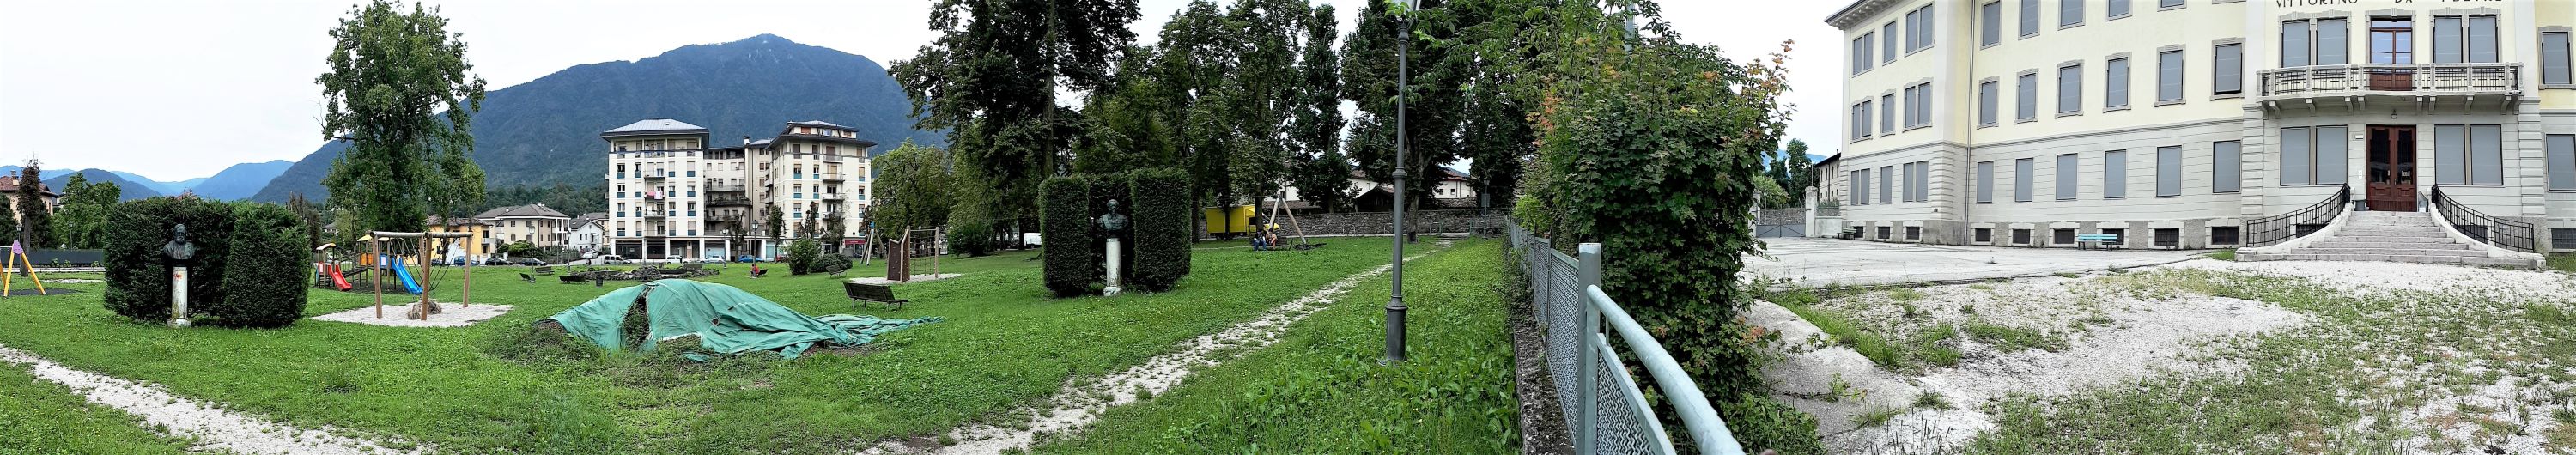 Parco della Rimembranza di Feltre (parco, commemorativo ai caduti della prima guerra mondiale) - Feltre (BL) 